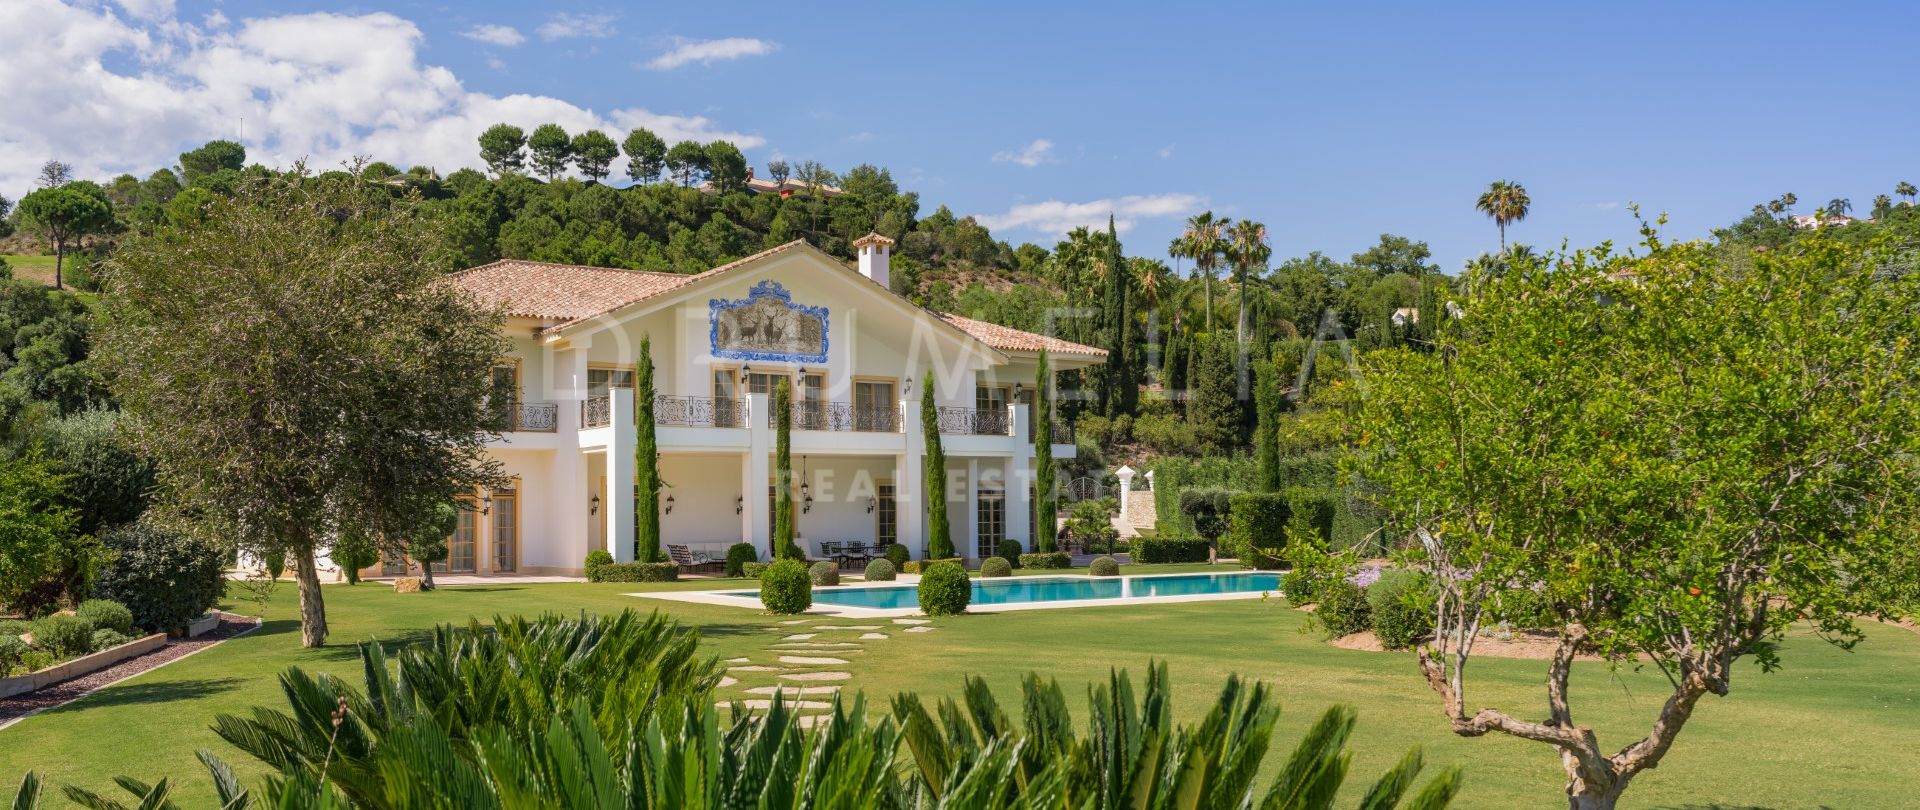 Magnífica mansión de estilo mediterráneo para vivir de lujo en La Zagaleta, Benahavís.